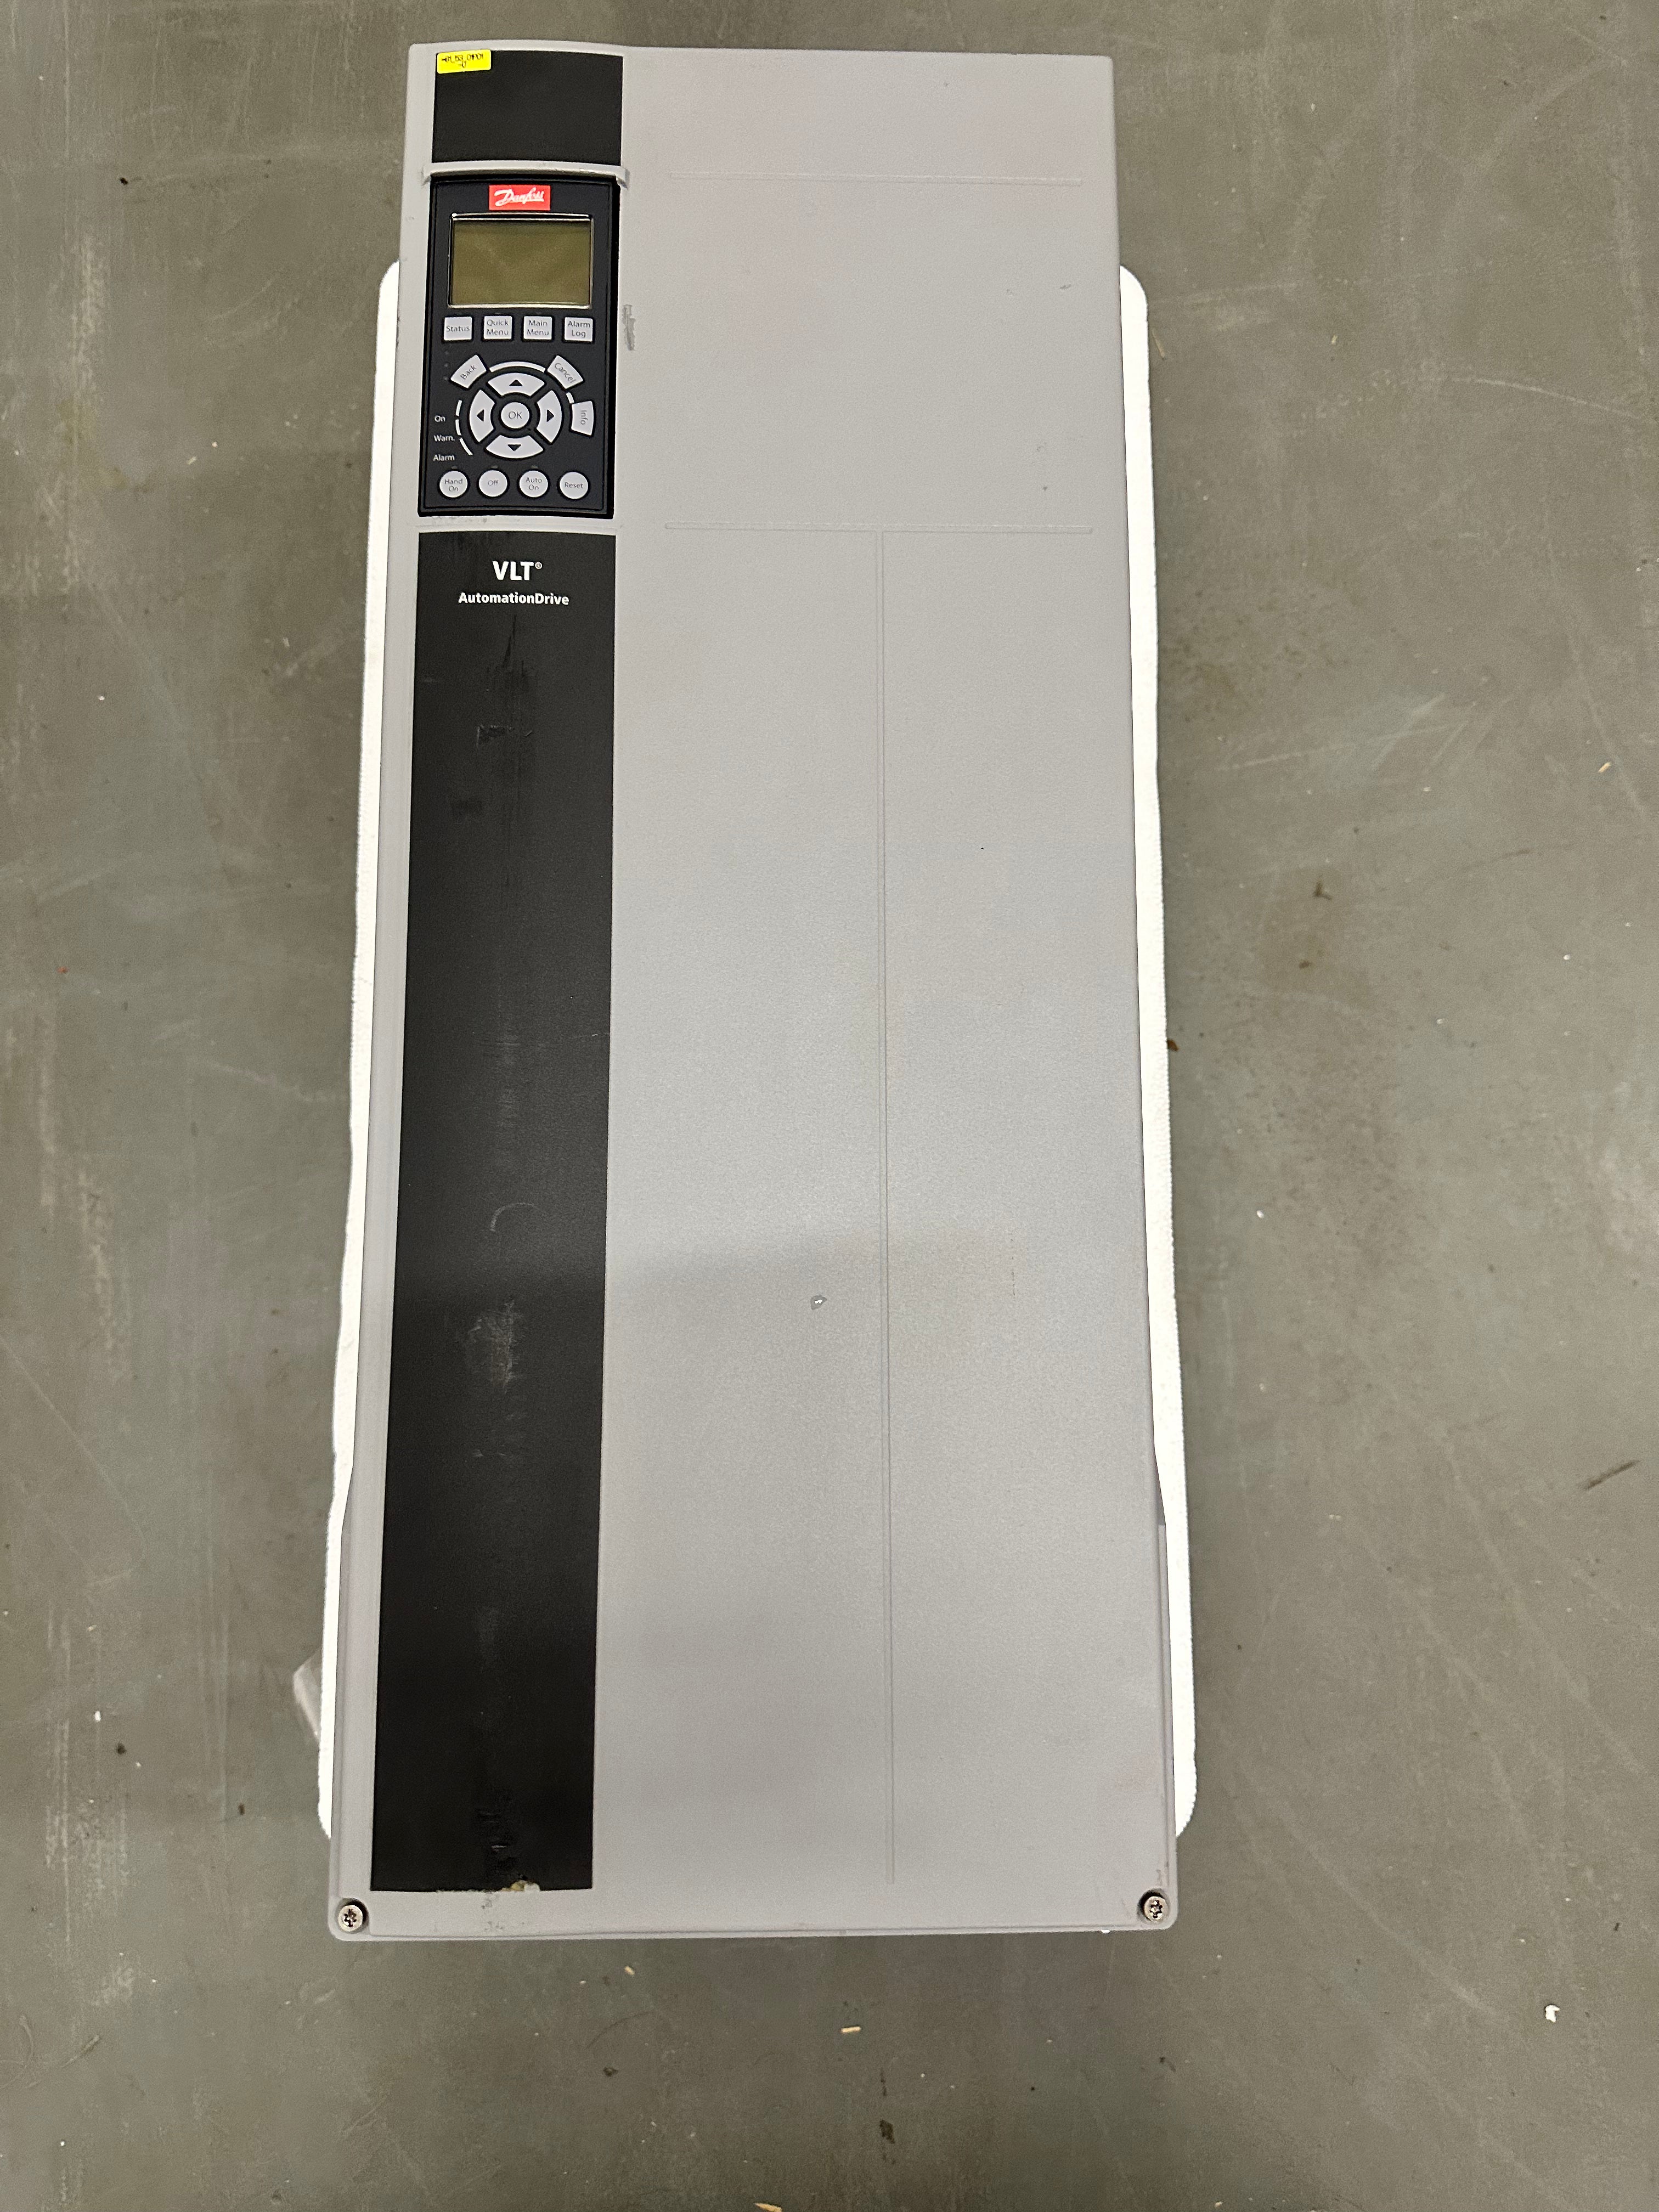 Variateur de fréquence Danfoss VLT® AutomationDrive FC-301